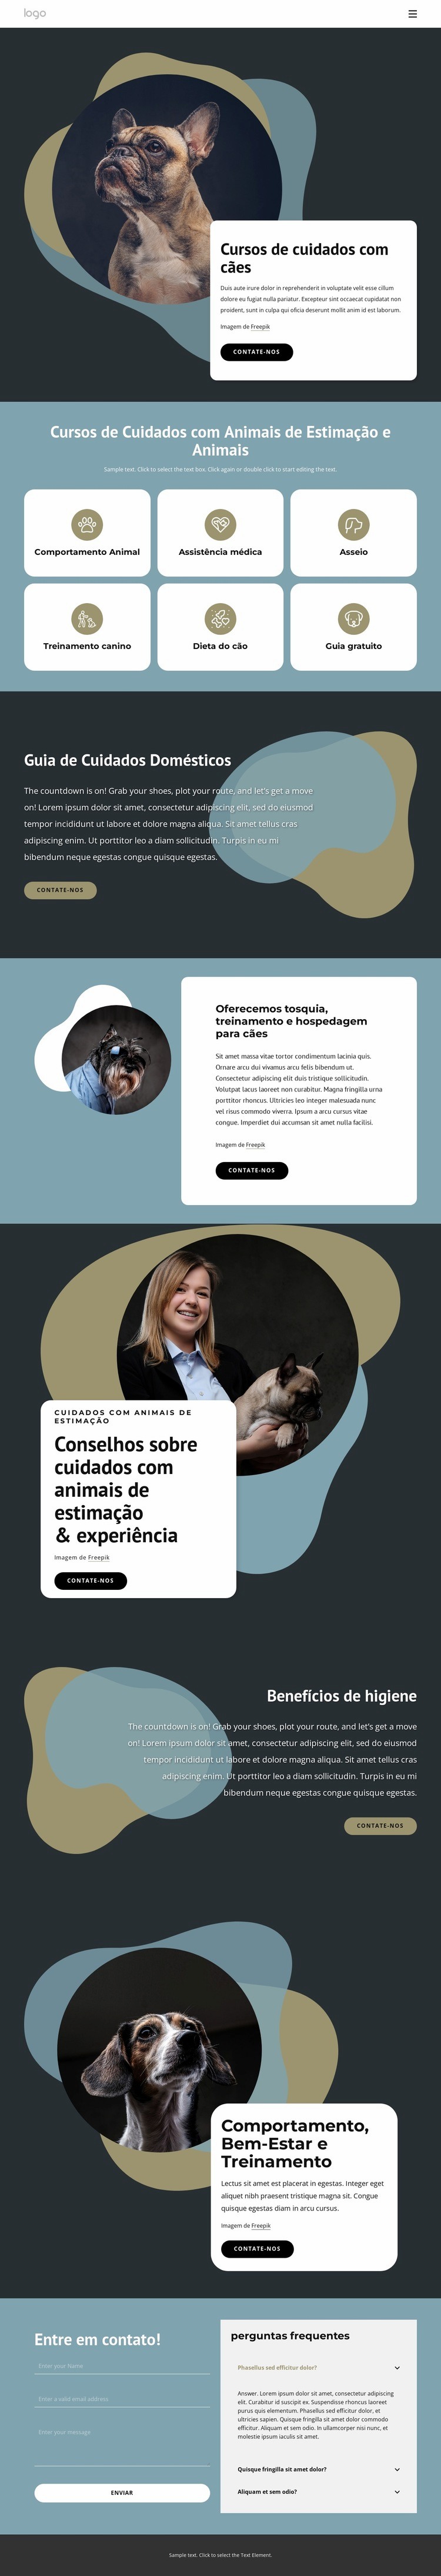 Cursos de cuidados com cães Design do site